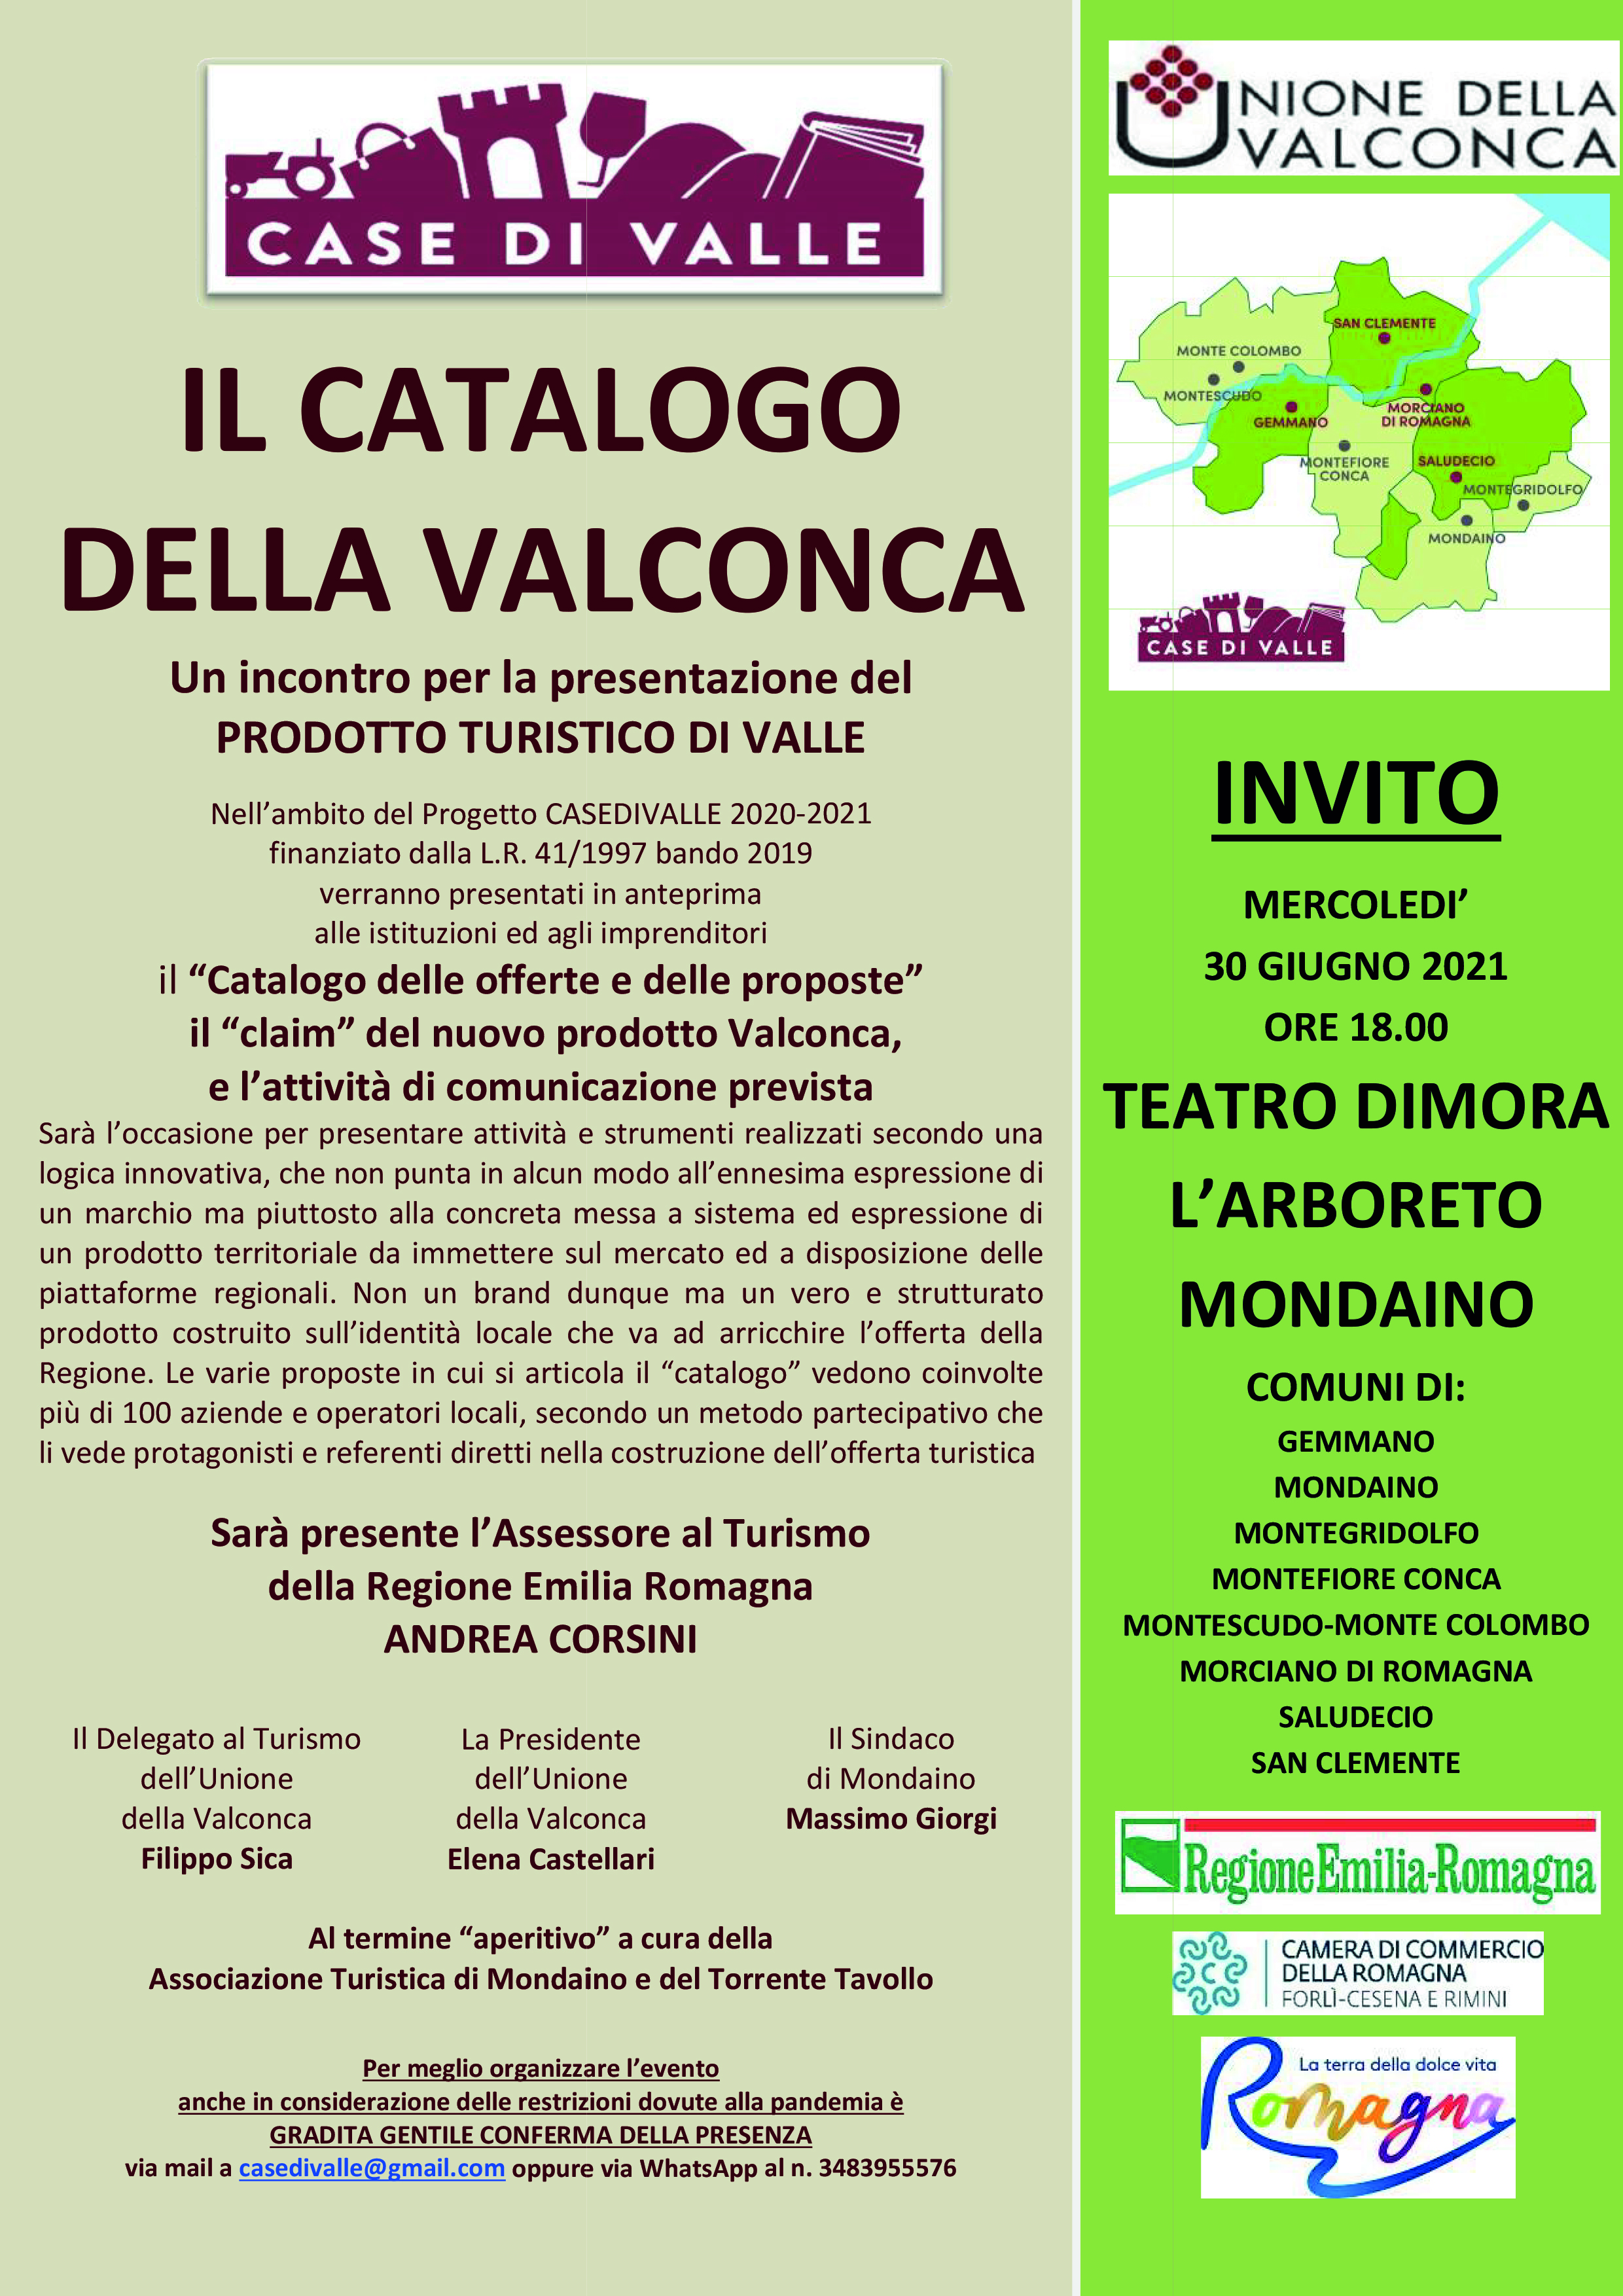 Il Catalogo della Valconca - Mercoledì 30 giugno, ore 18, Teatro Dimora L'Arboreto a Mondaino